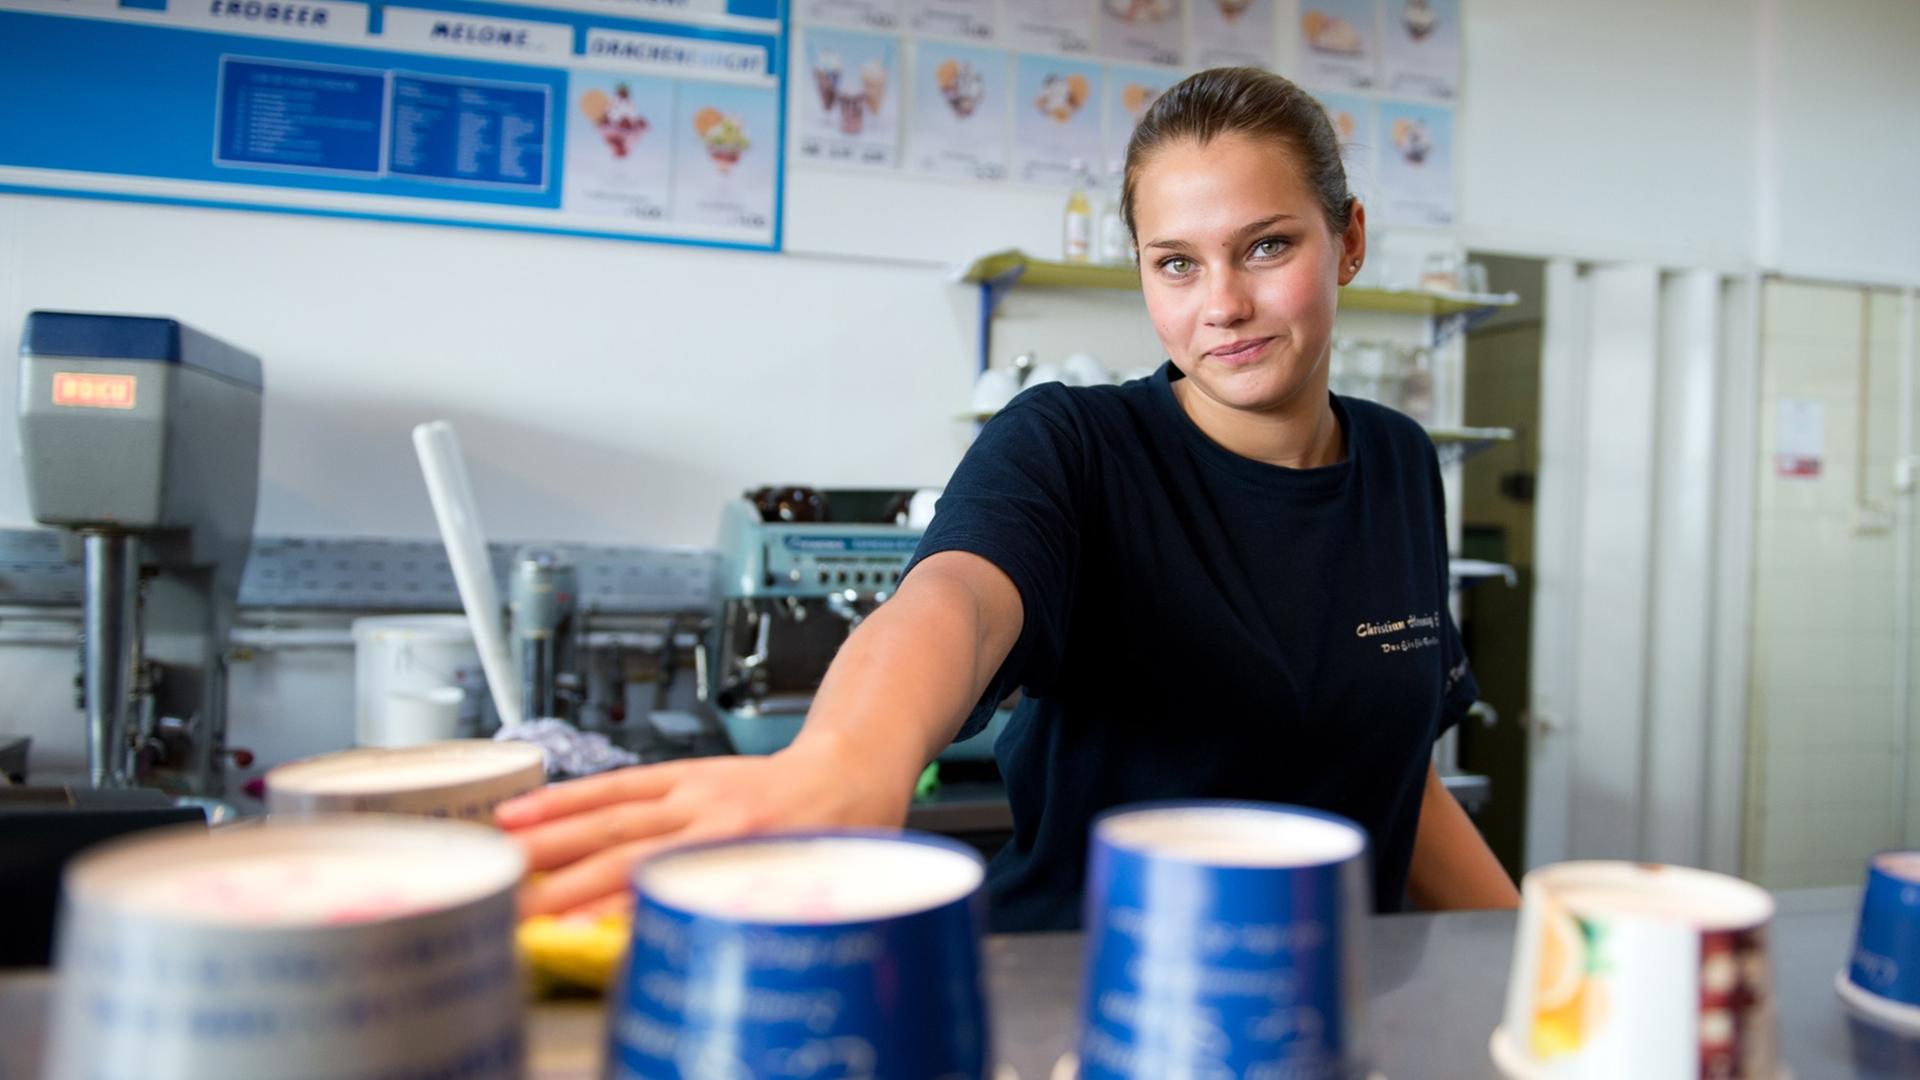 Ein Mädchen steht am 04.07.2014 in einer Eisdiele in Berlin. Die 19-jährige Schülerin arbeitet neben der Schule in einer Tempelhofer Eisdiele.